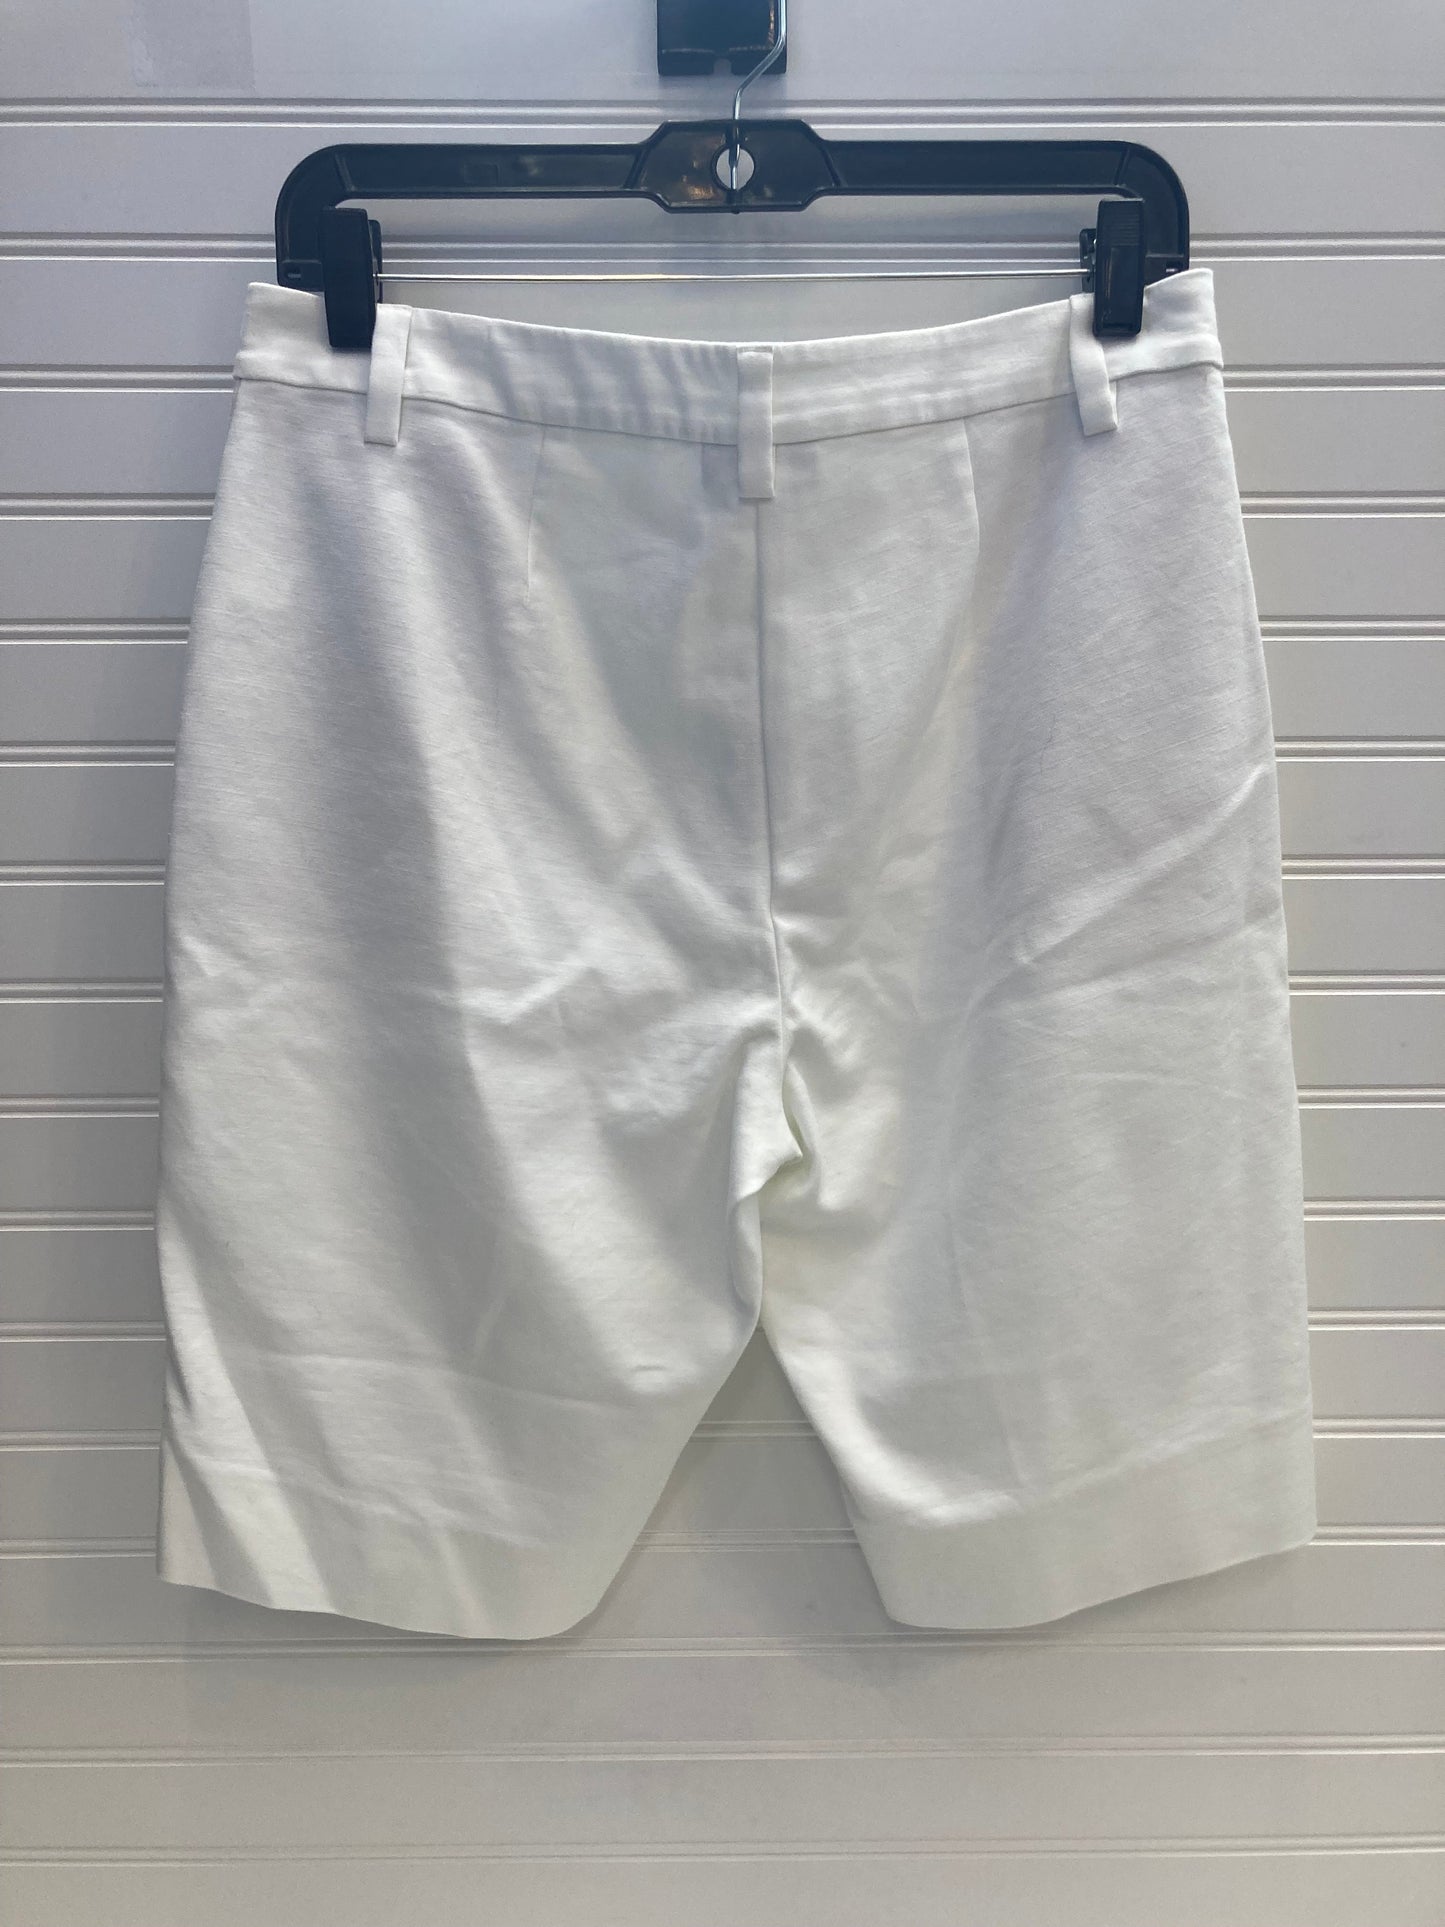 White Shorts J. Jill, Size 8